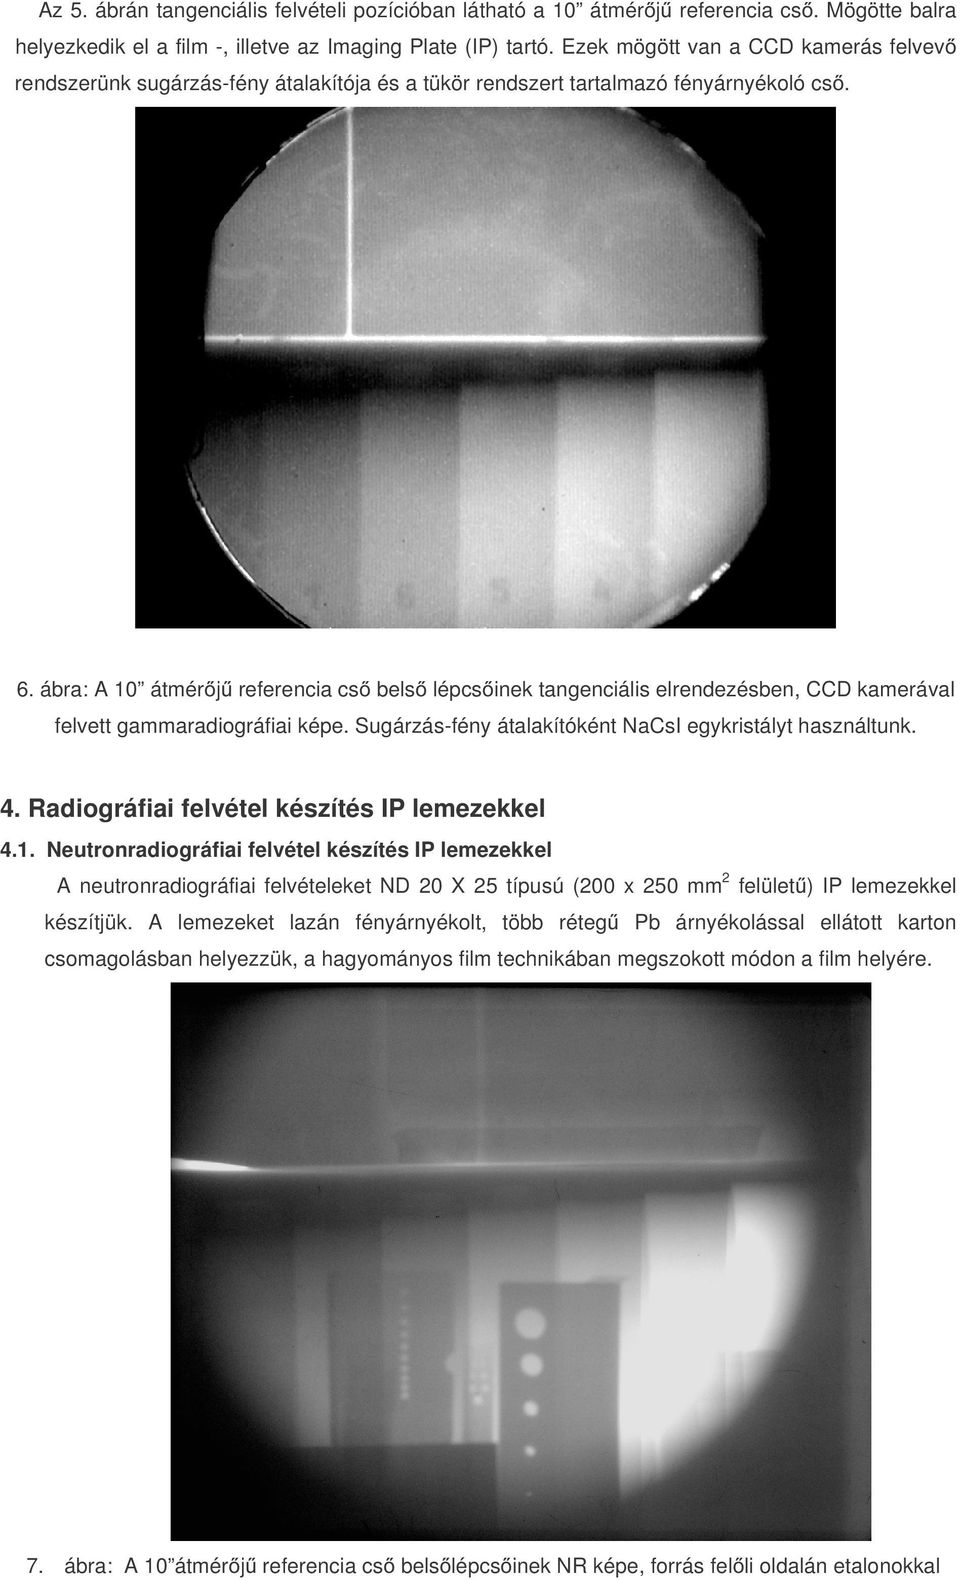 ábra: A 10 átmérőjű referencia cső belső lépcsőinek tangenciális elrendezésben, CCD kamerával felvett gammaradiográfiai képe. Sugárzás-fény átalakítóként NaCsI egykristályt használtunk. 4.